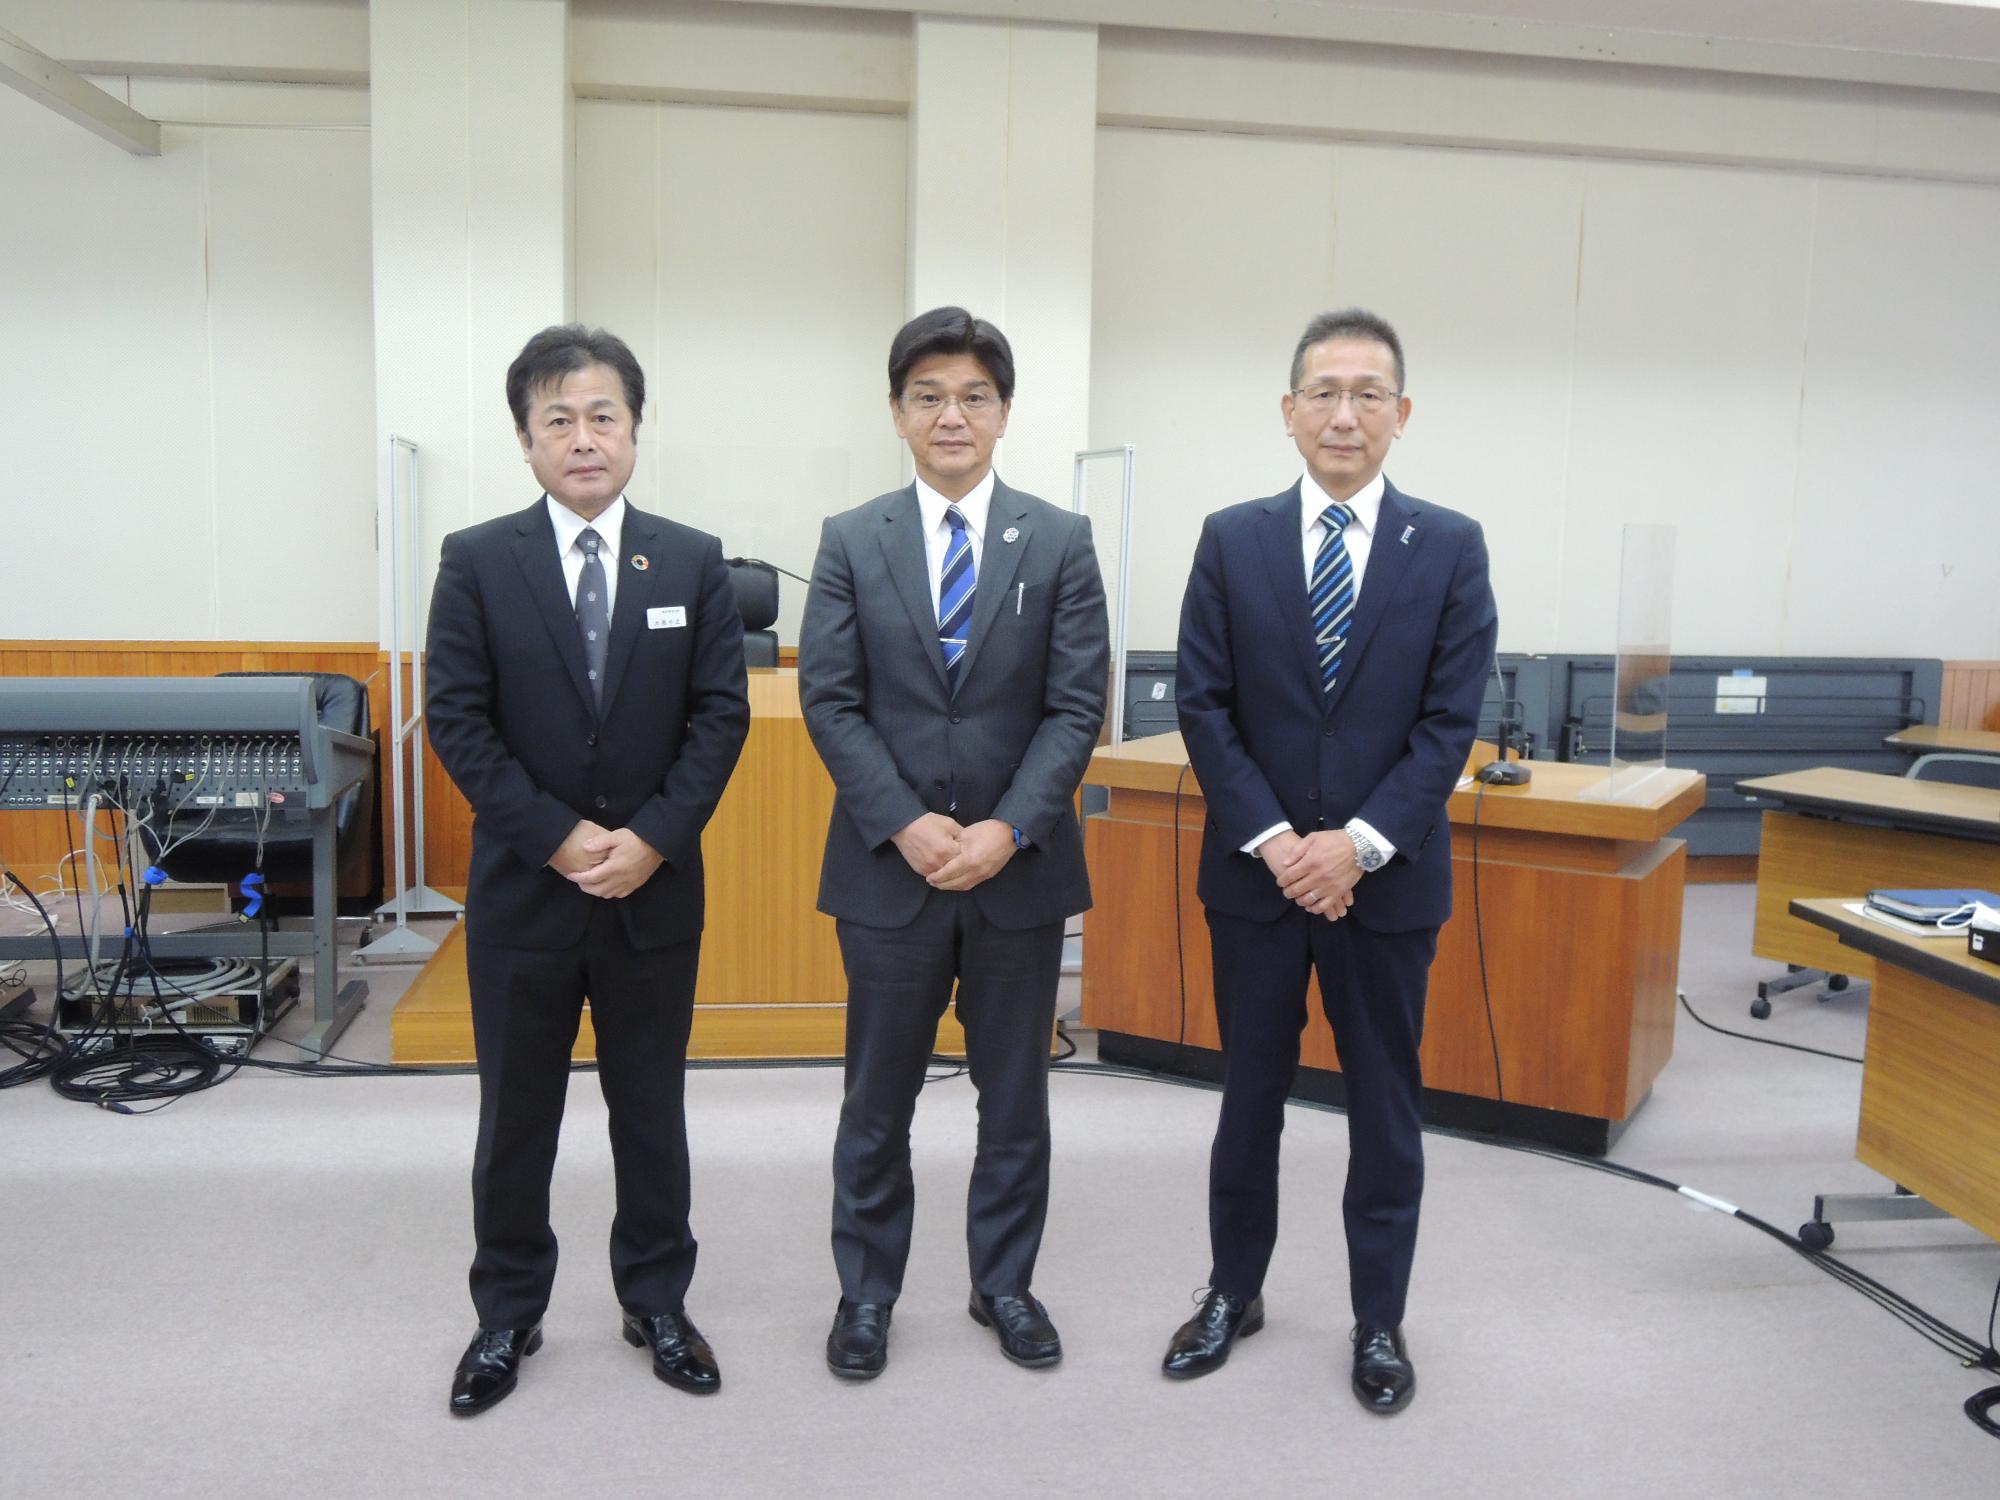 右から、高橋副町長、澤田町長、大西教育長